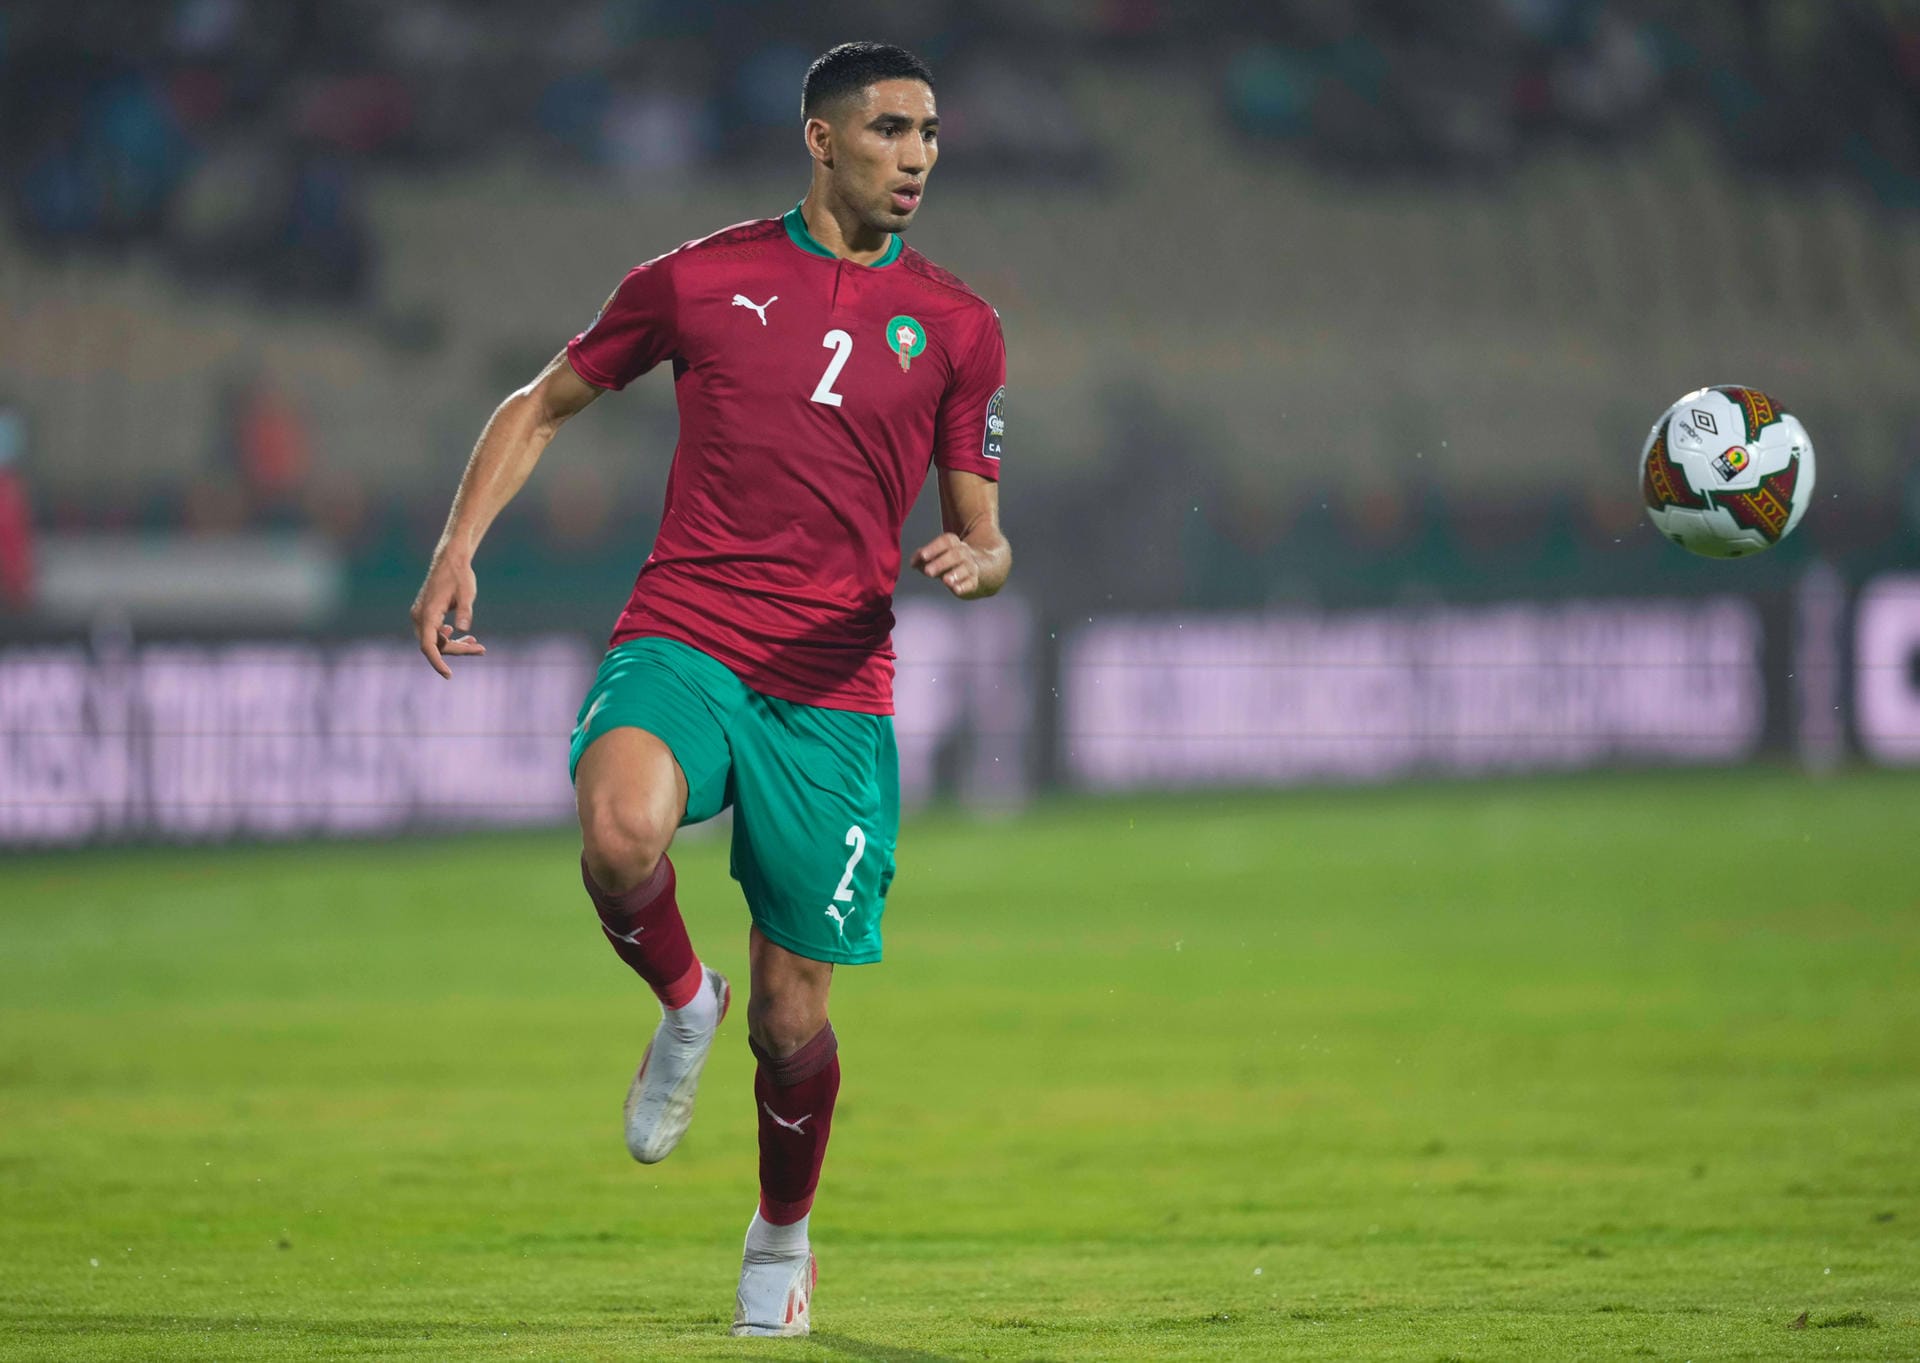 Marokko: Ex-BVB-Profi Achraf Hakimi und seine Teamkollegen sorgten für die zweite Endrunden-Teilnahme Marokkos in Folge, nachdem man sich zuvor 20 Jahre nicht qualifizieren konnte. Im Ausscheidungsspiel setzten sich die Nordafrikaner gegen die Demokratische Republik Kongo durch (1:1 und 4:1).